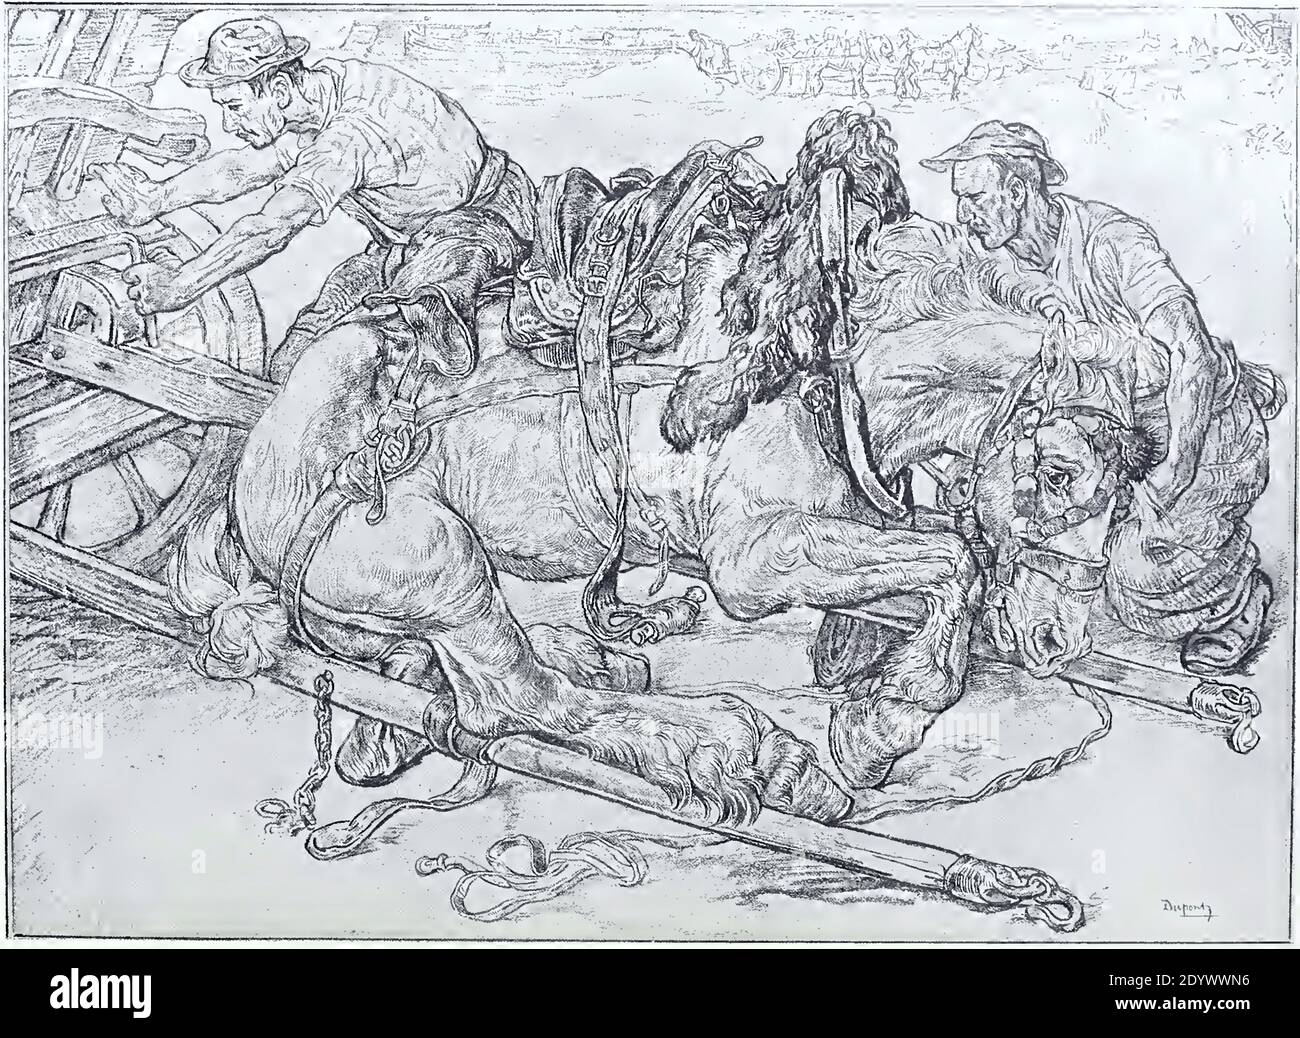 Estampado antiguo de época llamado el caballo caído por artista holandés Pieter Dupont Foto de stock